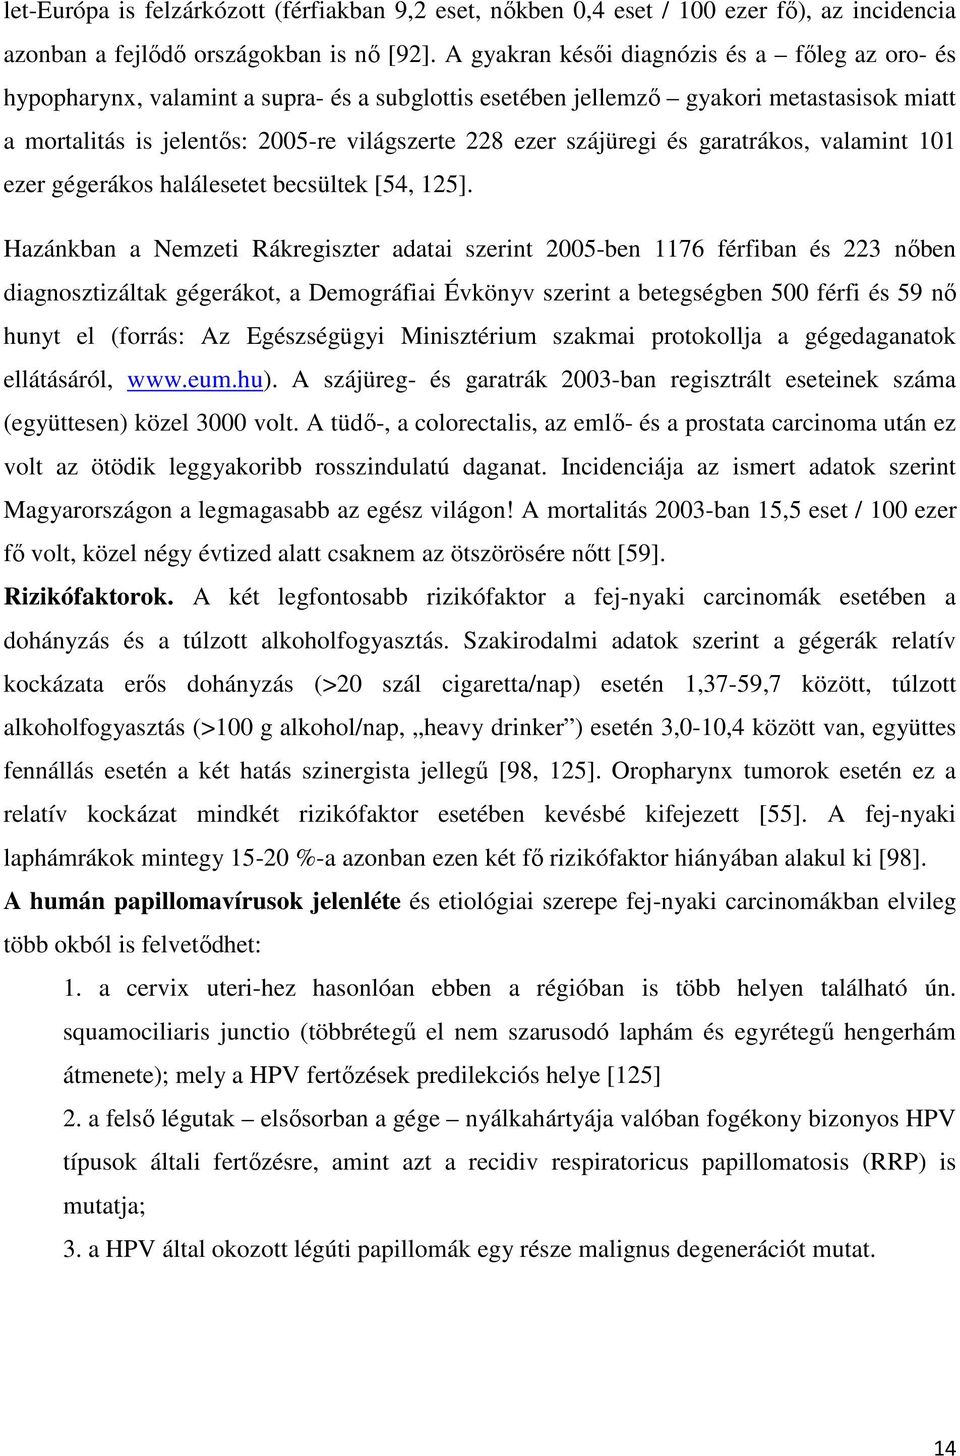 cidofovir légúti papillomatosis esetén humán papillomavírus onkogenezise